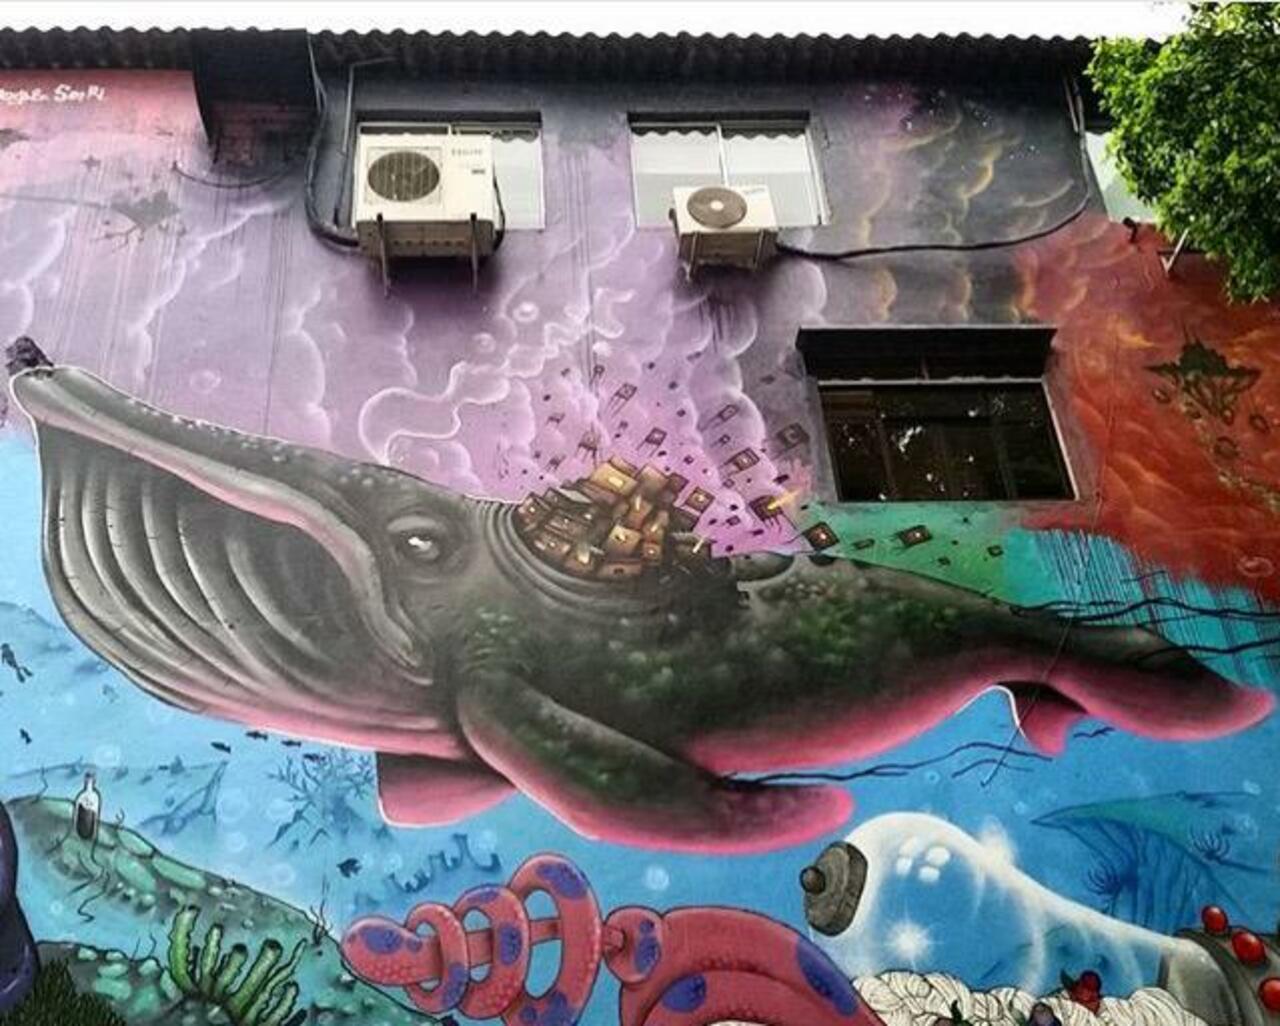 Street Art by joks_johnes Pinheiros, São Paulo 

#art #mural #graffiti #streetart http://t.co/dqkWeO3EkJ